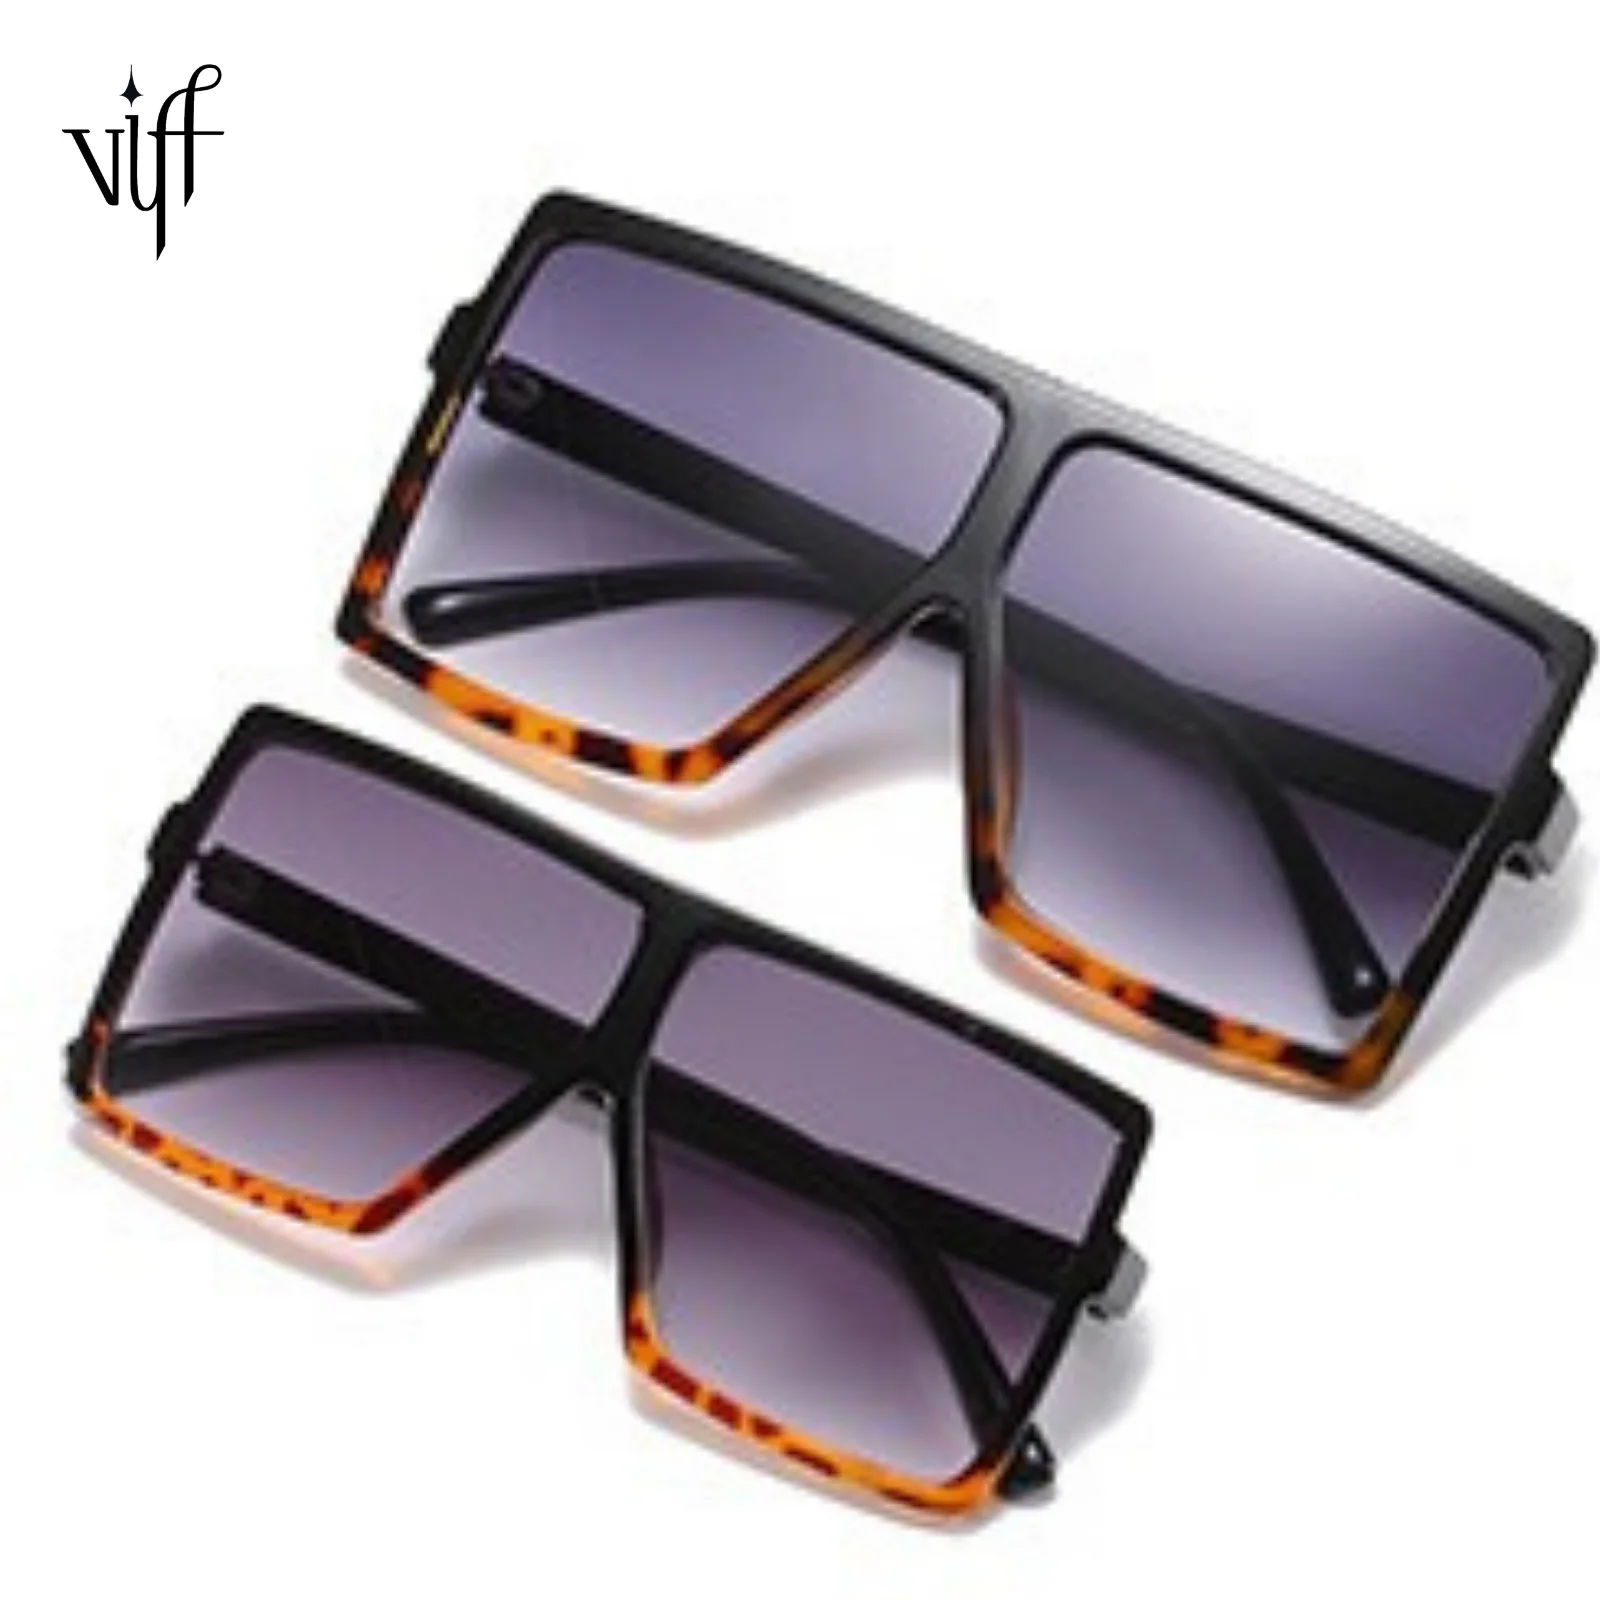 

VIFF HP20427 Multi Color Shades Hot Seller Gafas Del Sol Sun Glasses Mommy Me Fashion Square Sunglasses Oversized 2021